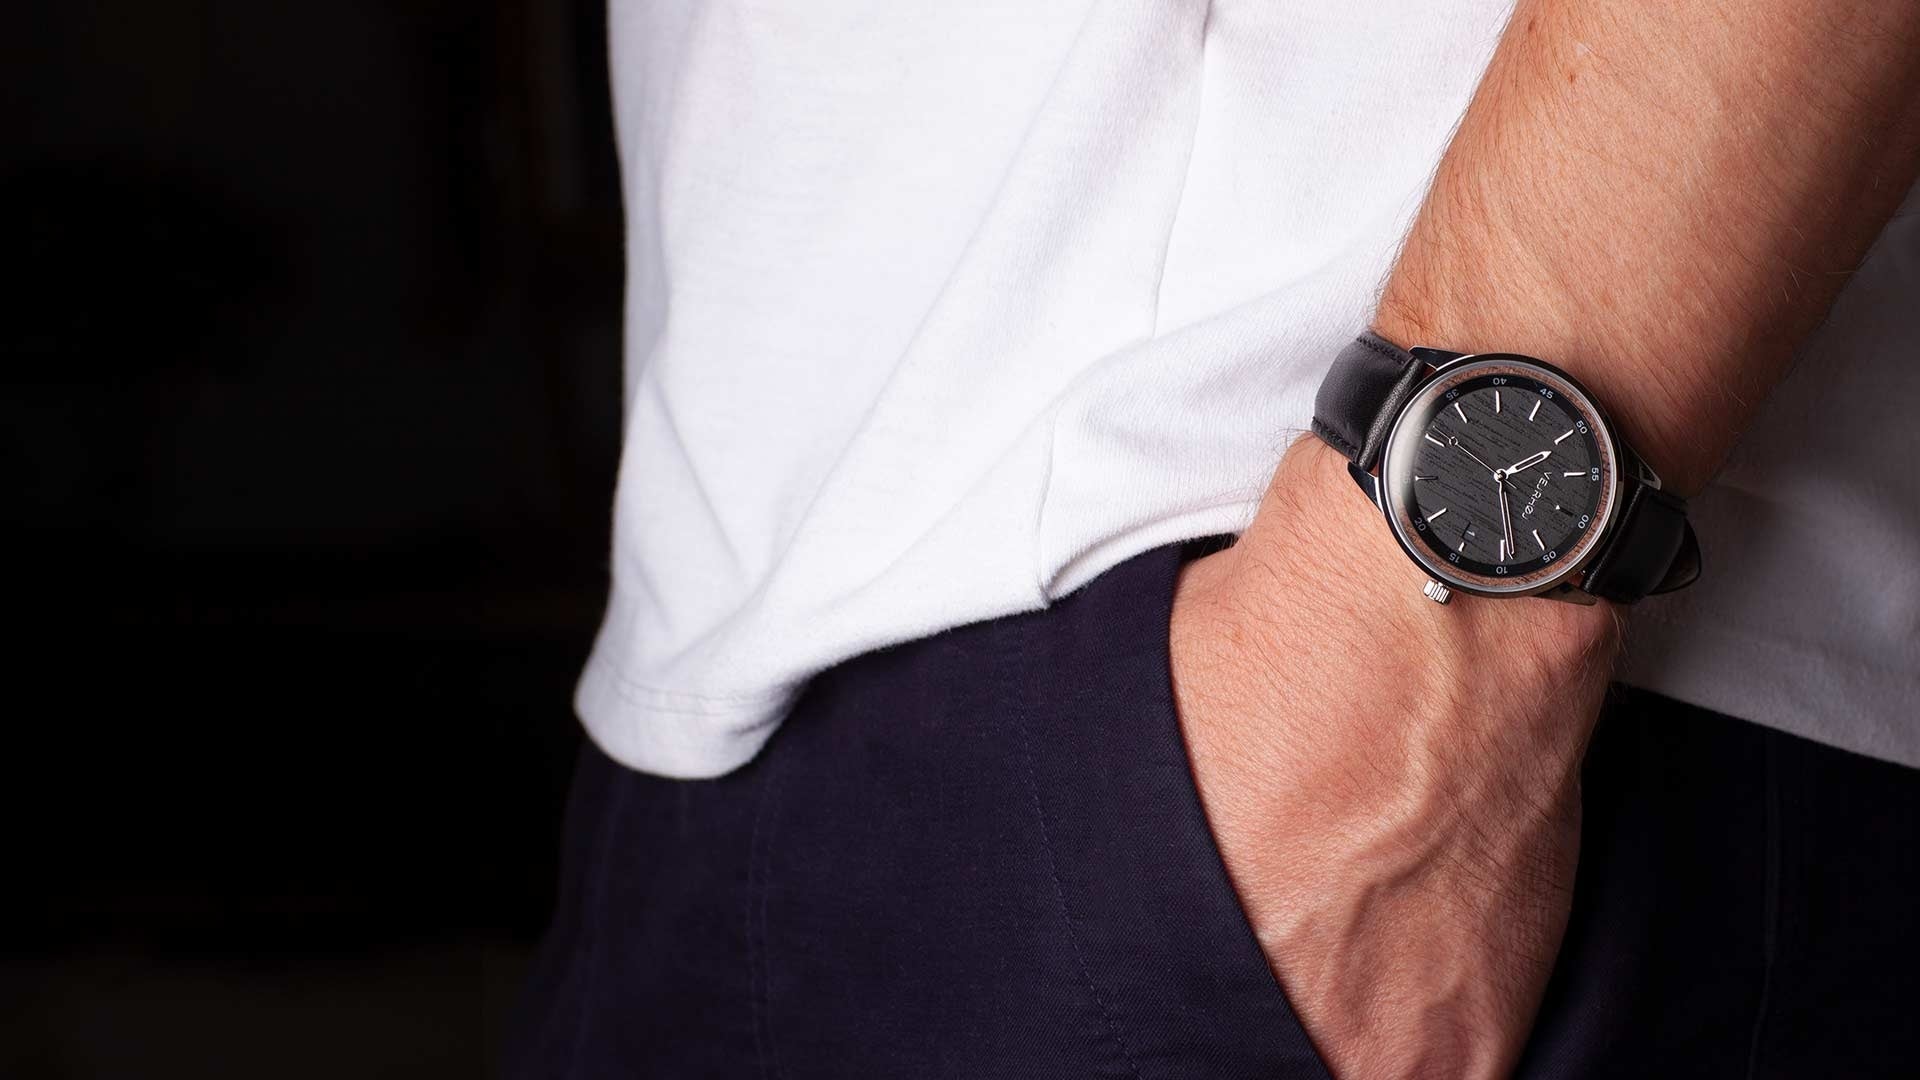 【新製品】腕時計ブランドVEJRHØJが、木材が主役の自動巻き式コレクション第2弾を発表